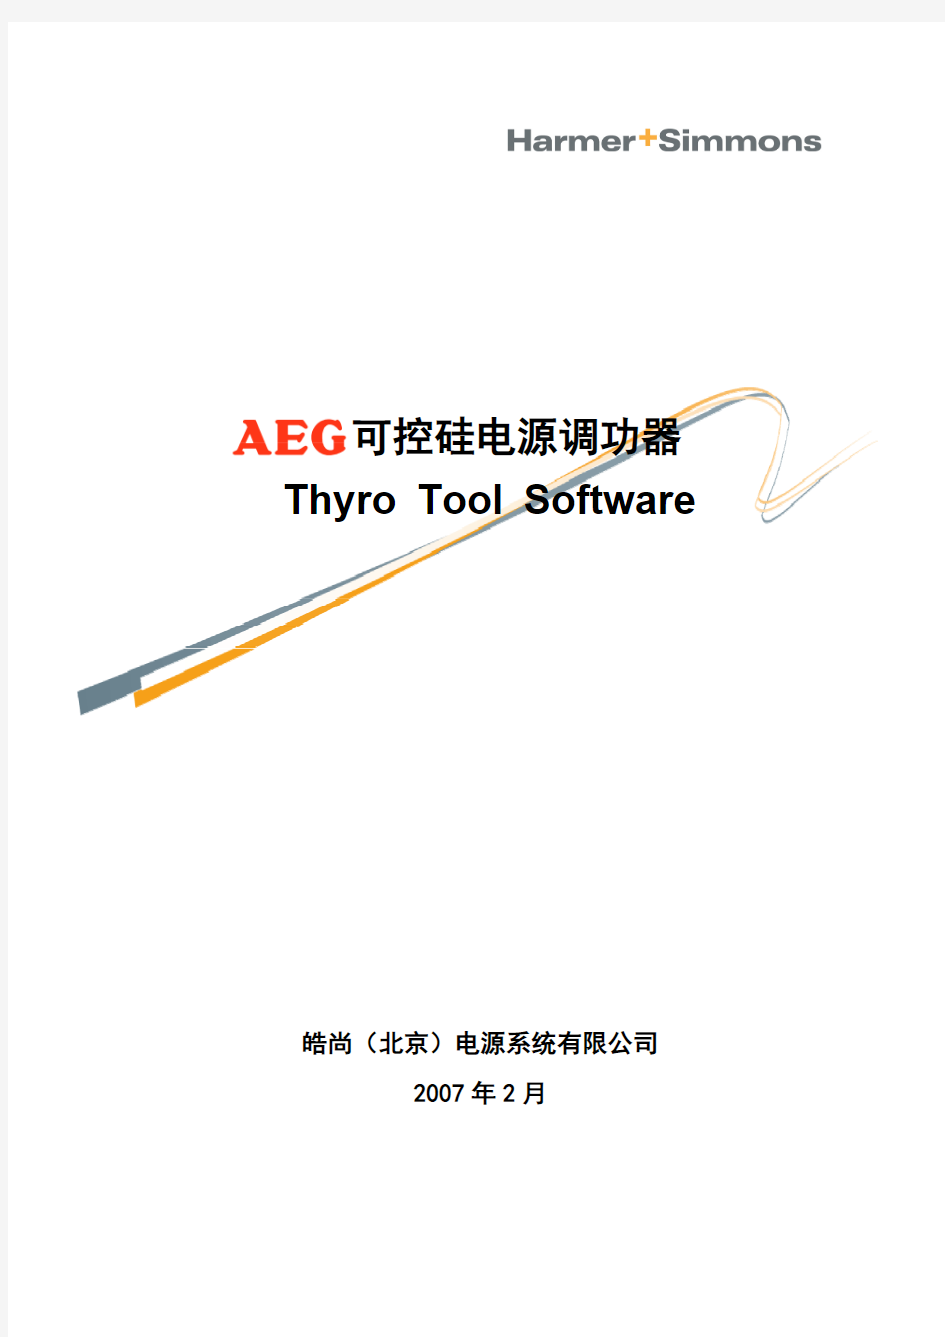 Thyro-Tools Software Manual